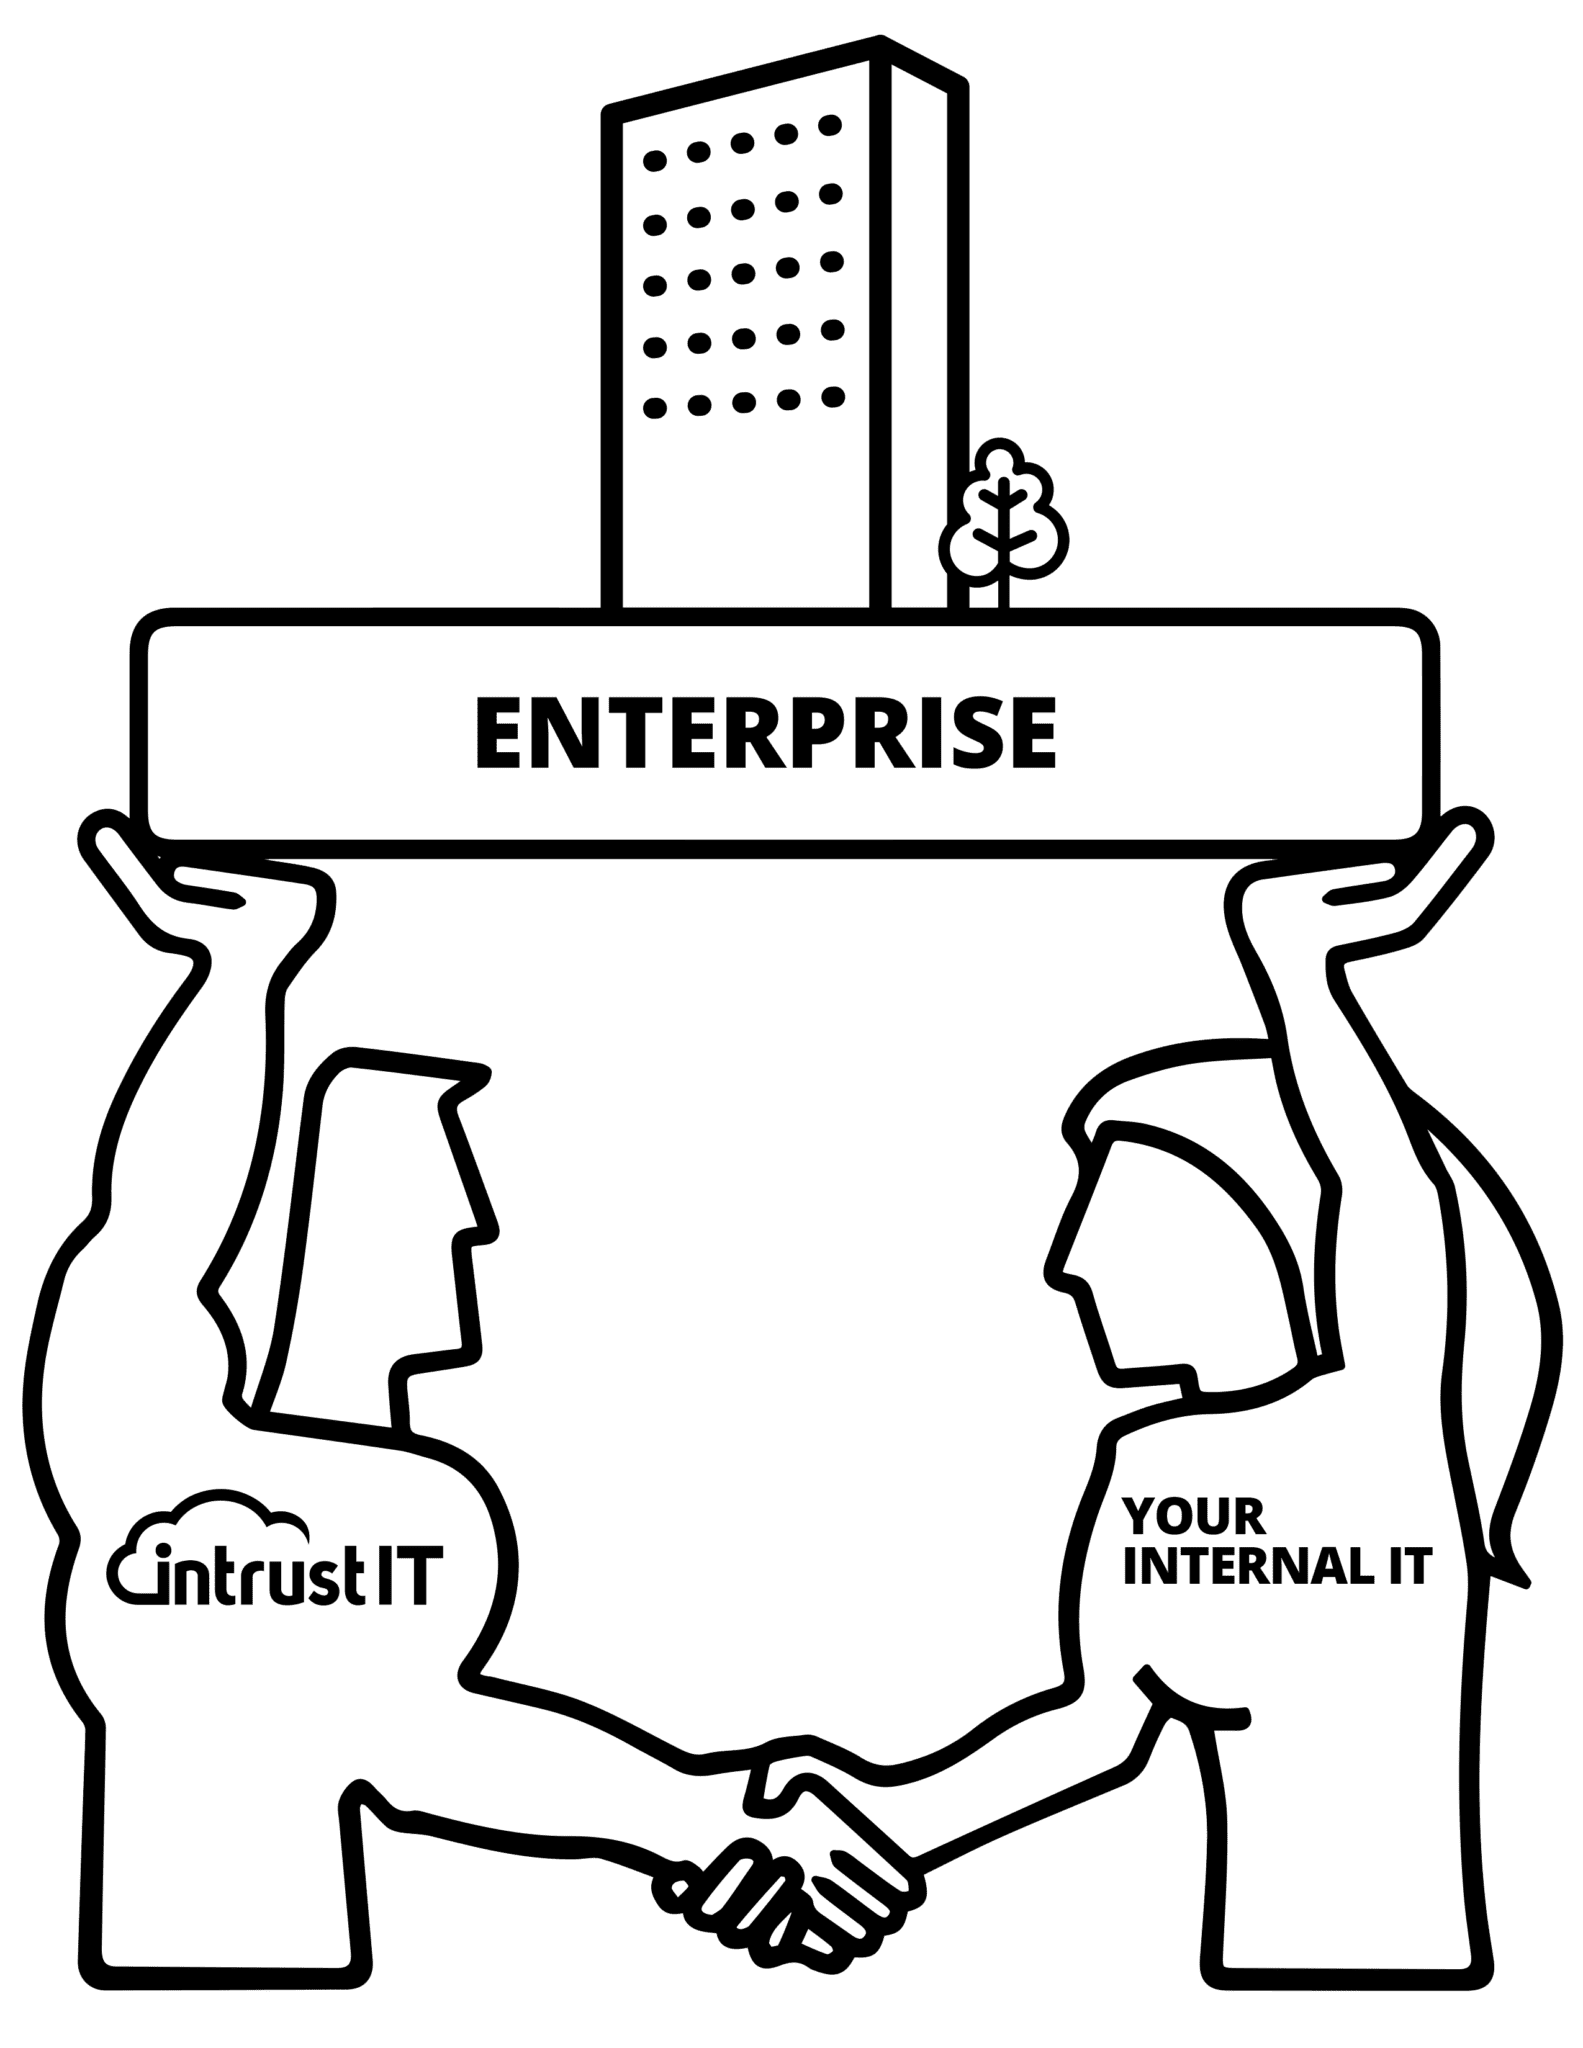 Enterprise IT Support Package - Intrust IT